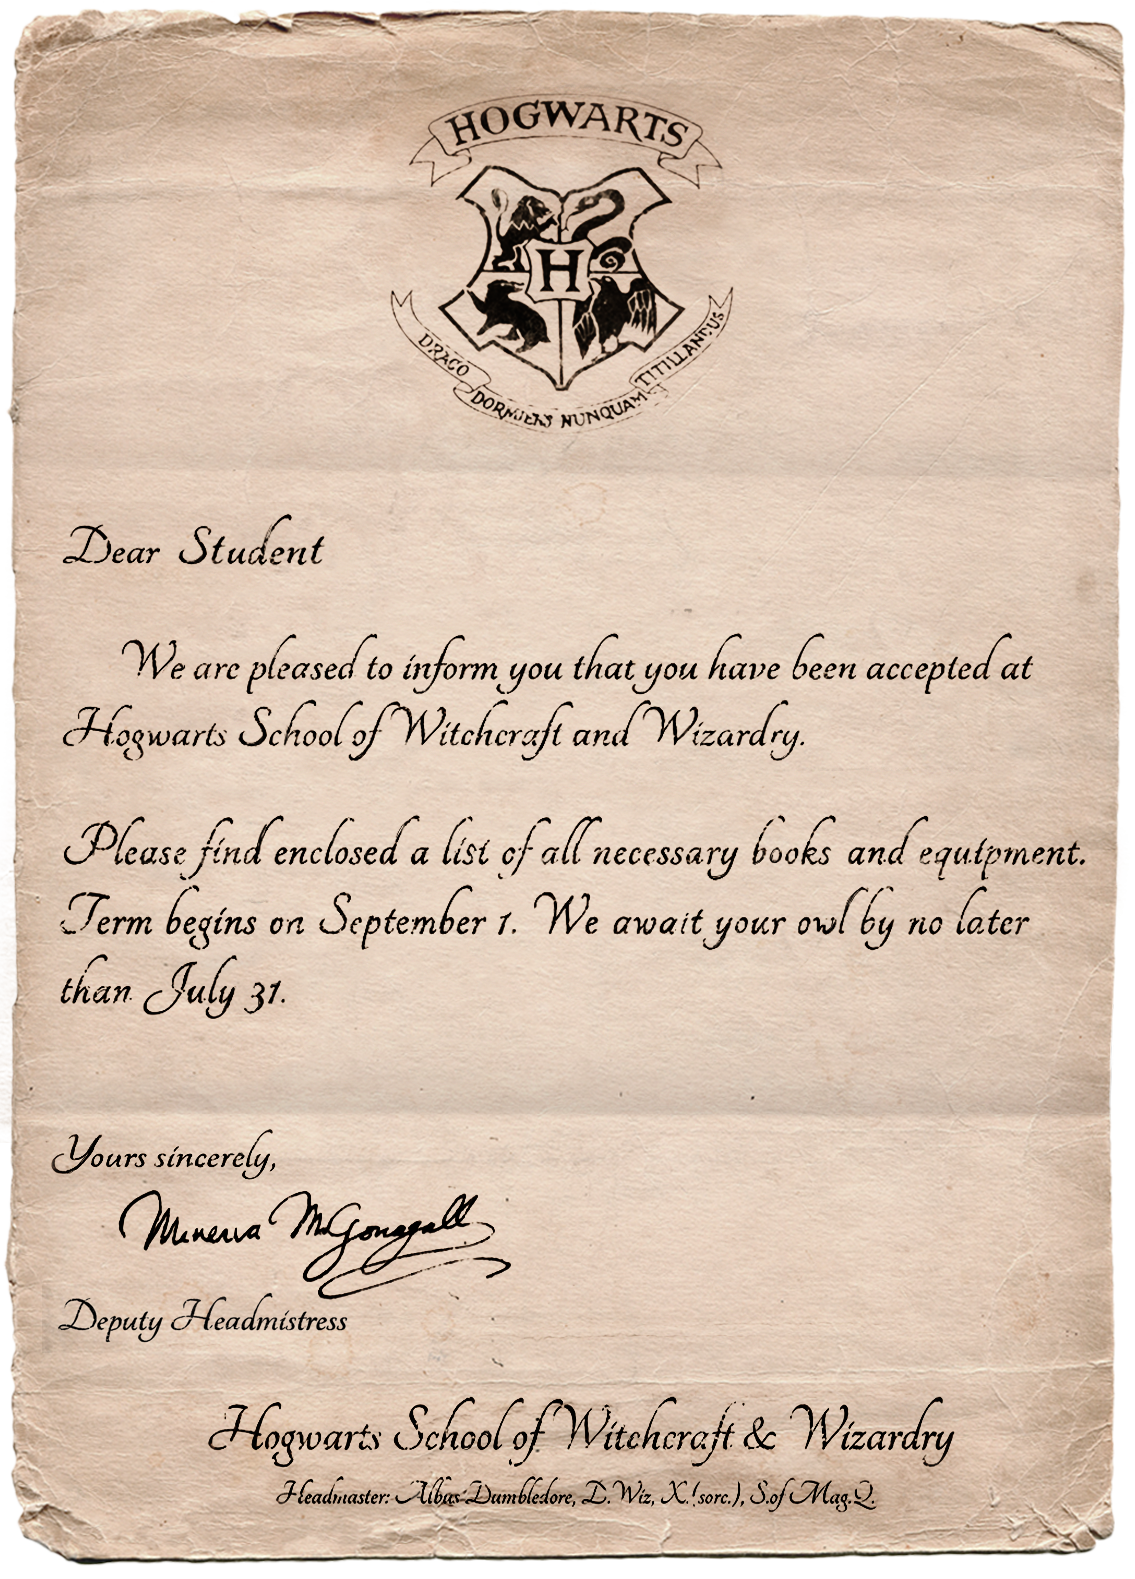 image-letter-hogwarts-mystery-png-harry-potter-wiki-fandom